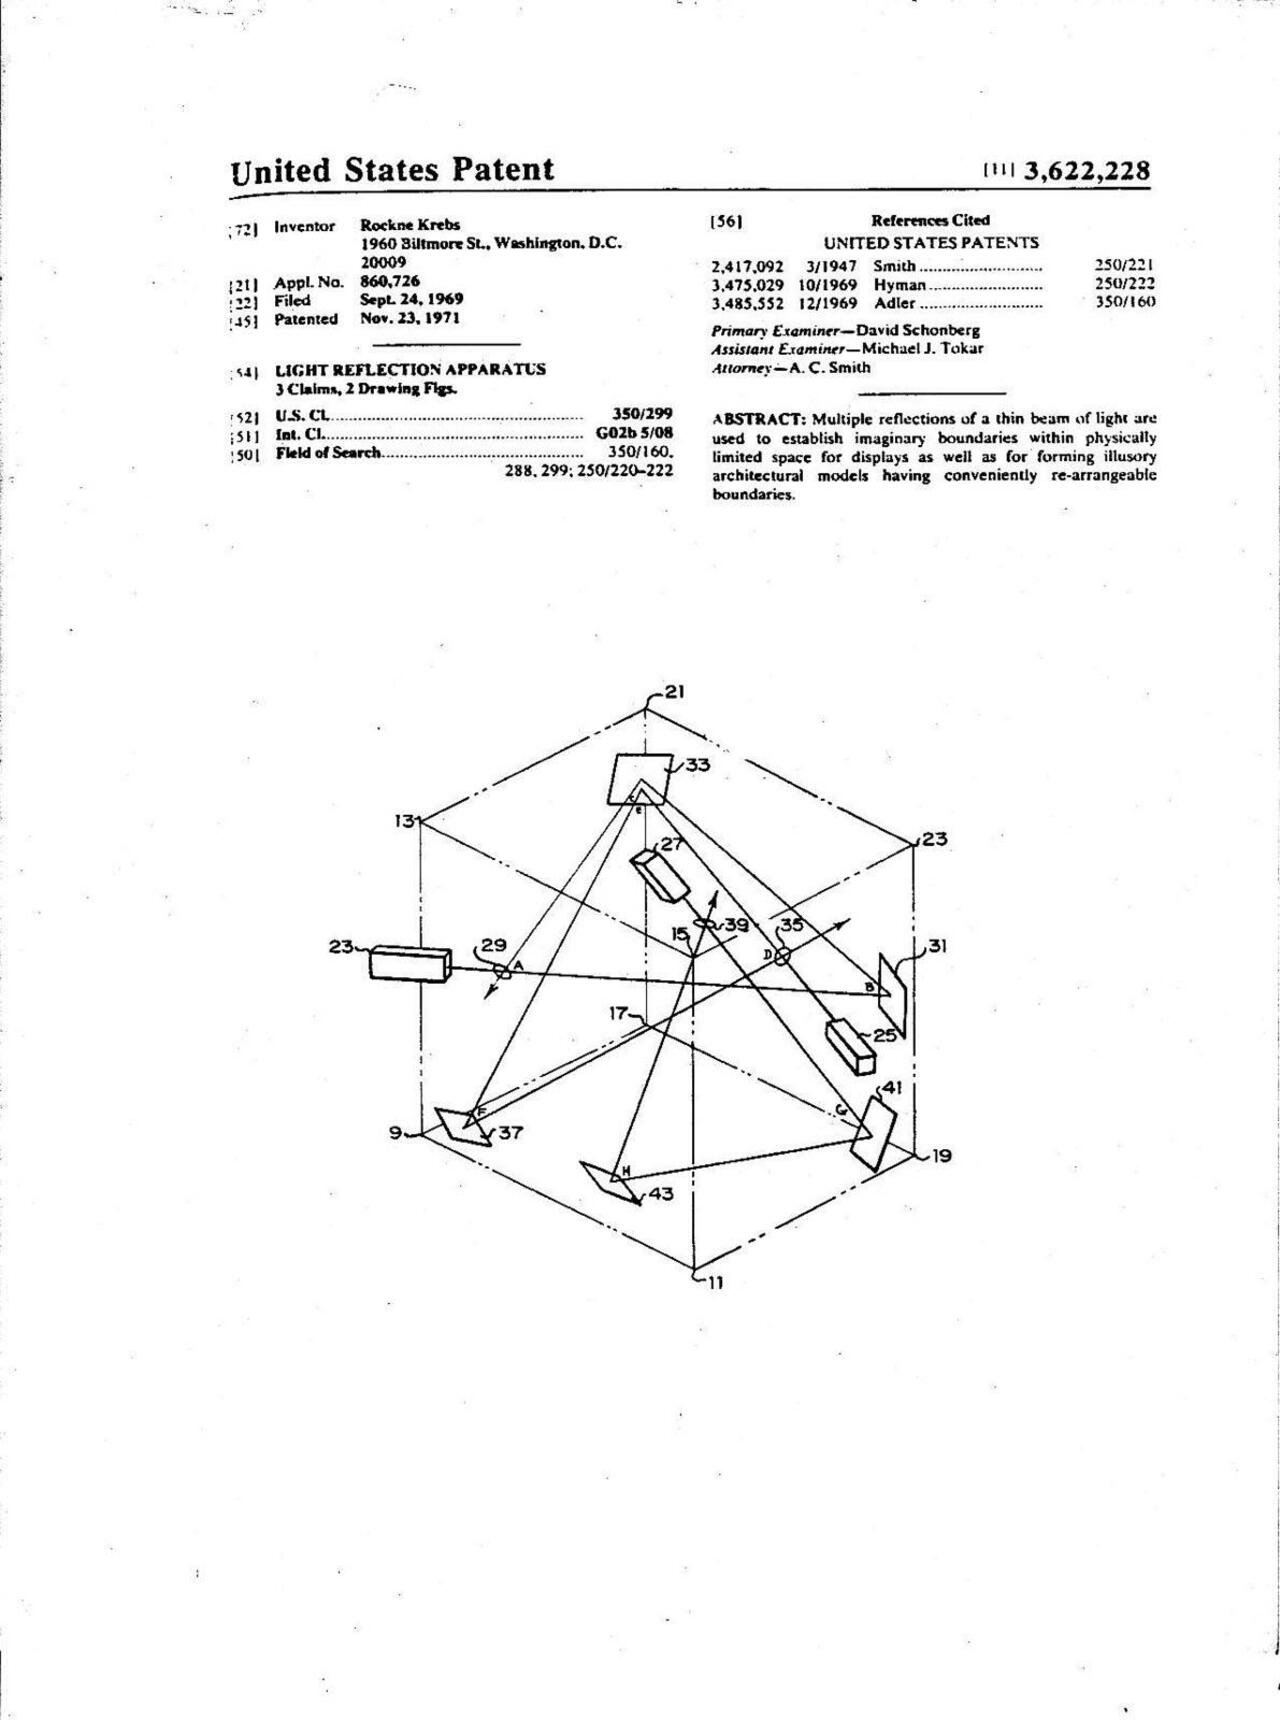 1969 Artist Rockne Krebs granted #laser beam (light) reflective system U.S. #Patent #artscience #ArtTech #LightArt http://t.co/lCYqZeDwX6